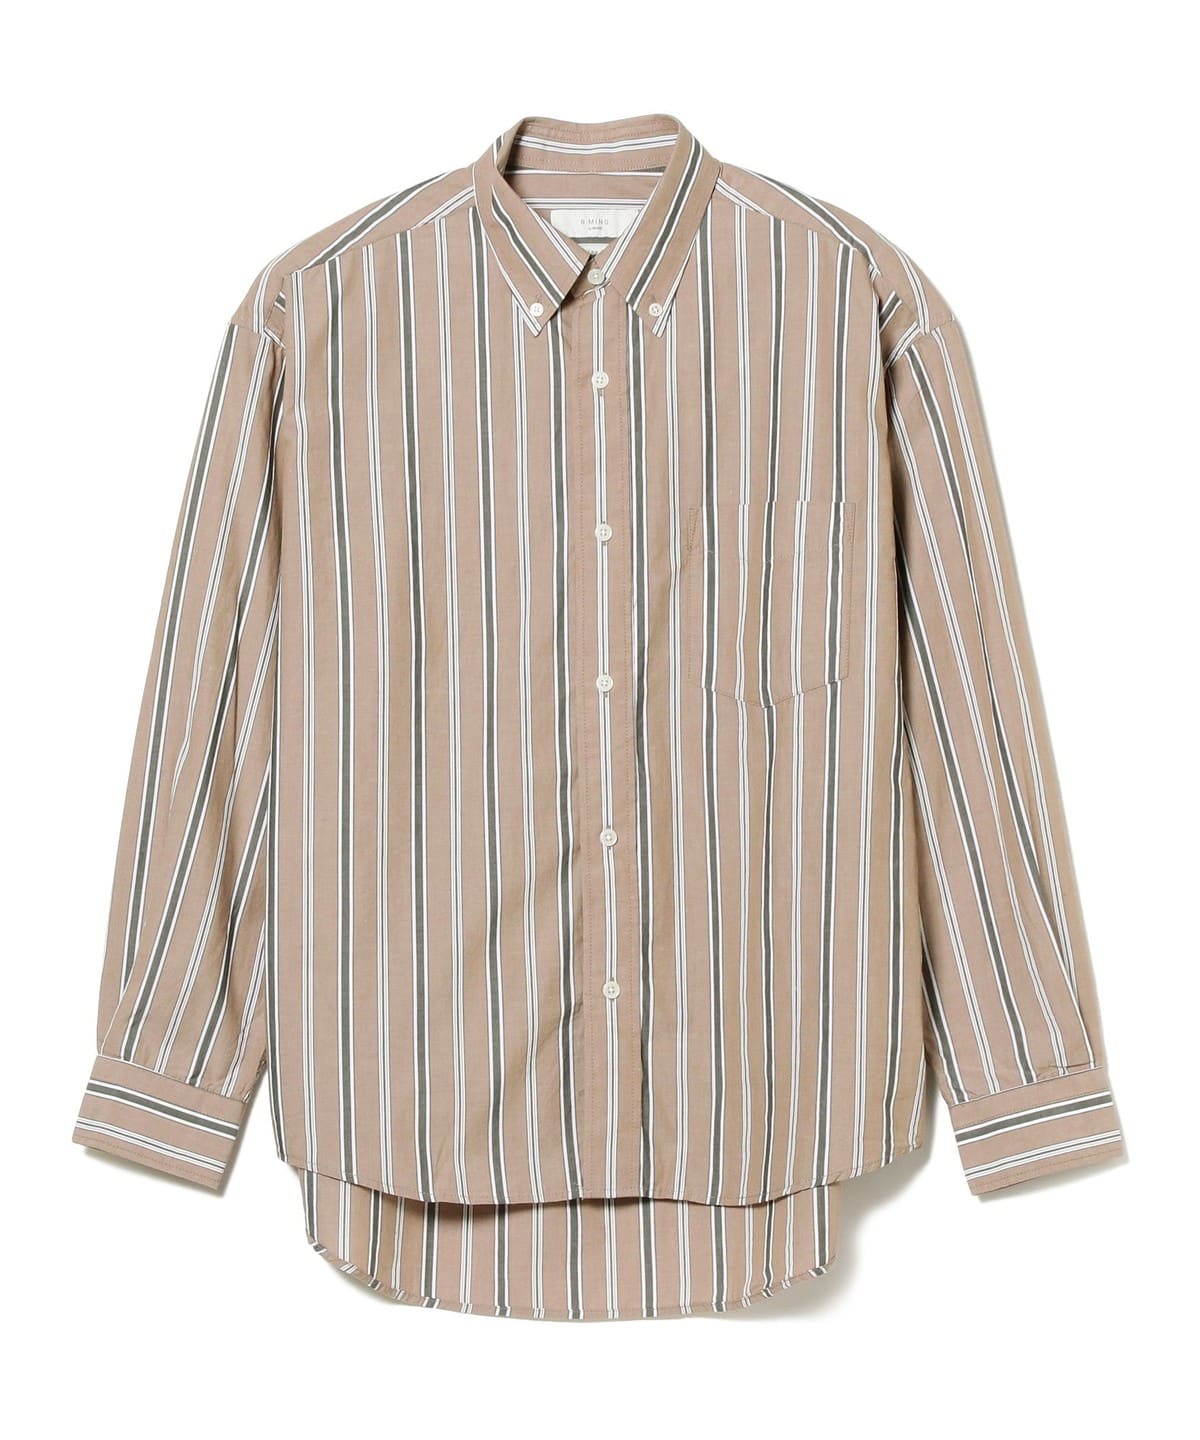 BEAMS JAPAN カジュアルシャツ XL グレーx紺(チェック)なし透け感